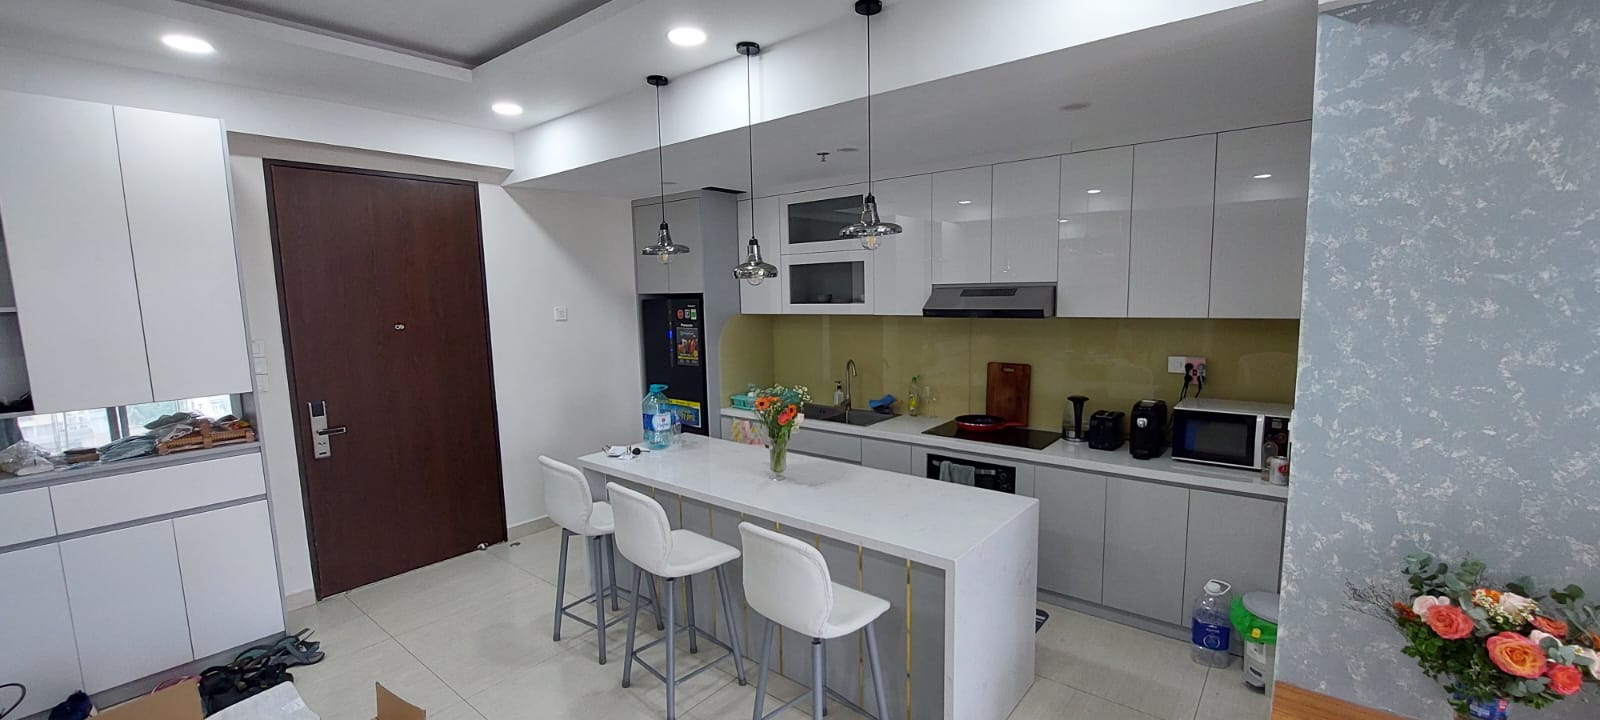 Cho thuê căn hộ Urban Hill, dự án chung cư cao cấp mới nhất của Phú Mỹ Hưng, Quận 7.